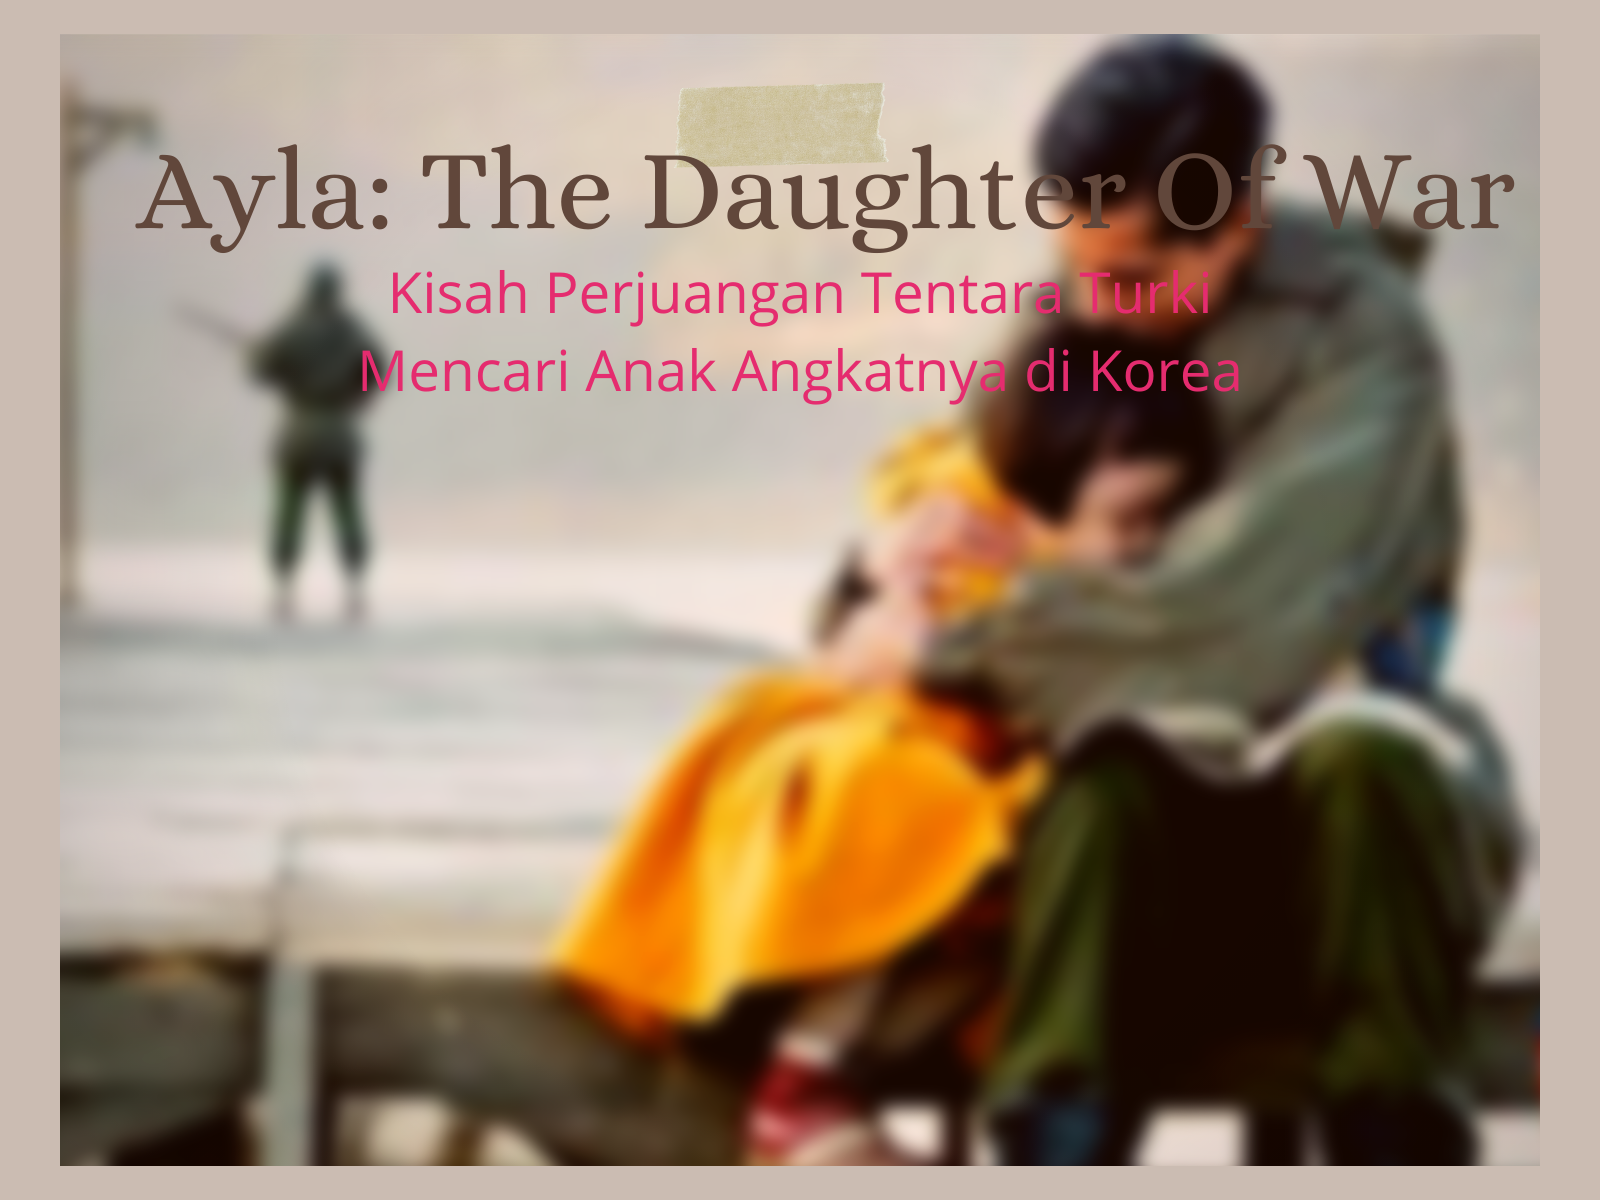 Ayla the daughter of war